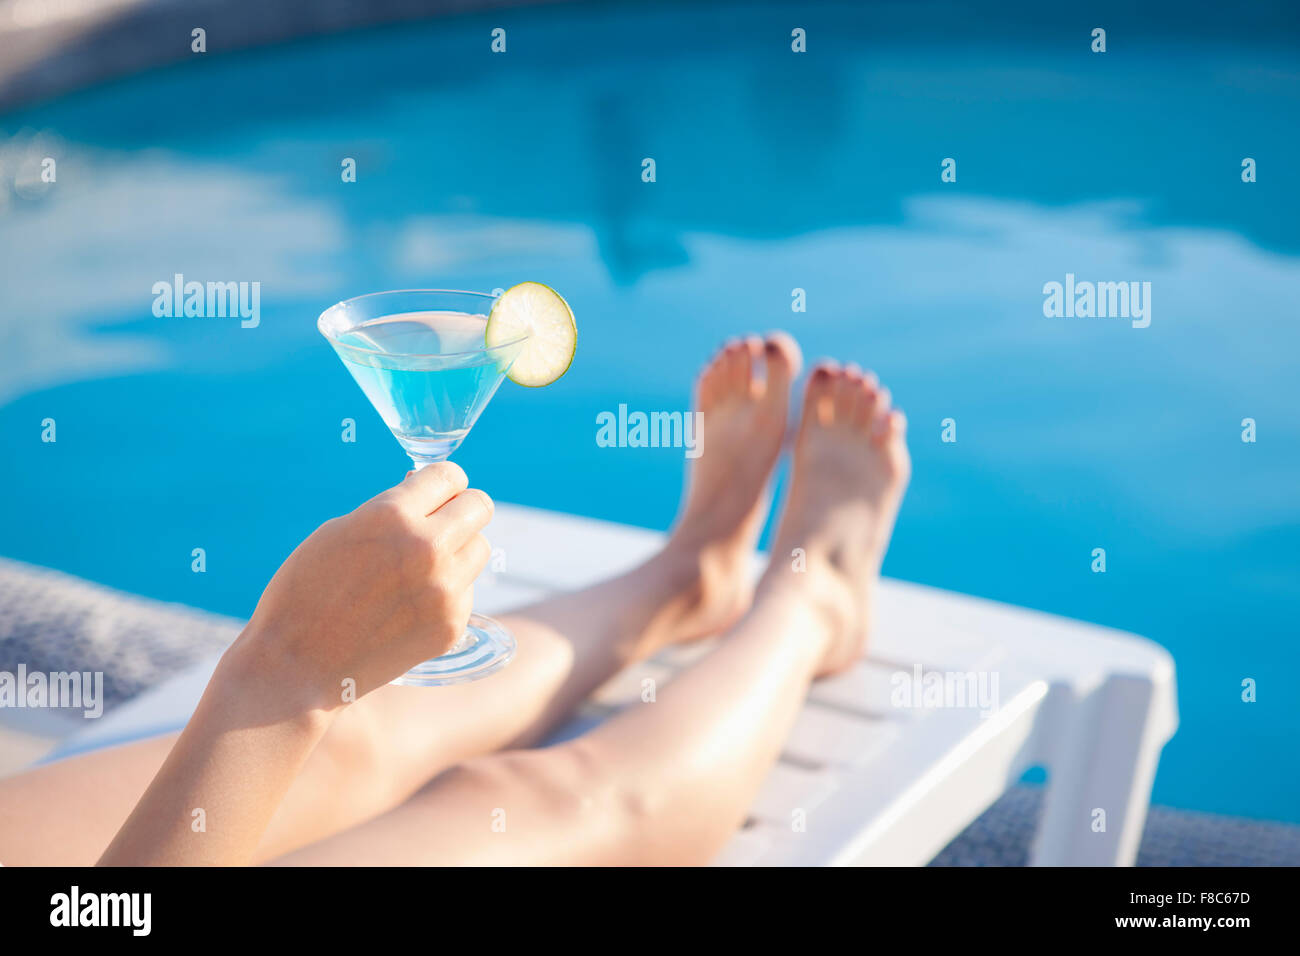 Cocktailglas mit Limettenscheibe im Besitz einer Person nur zu zeigen, die Hand und Beine mit dem Hintergrund von Schwimmbad Stockfoto